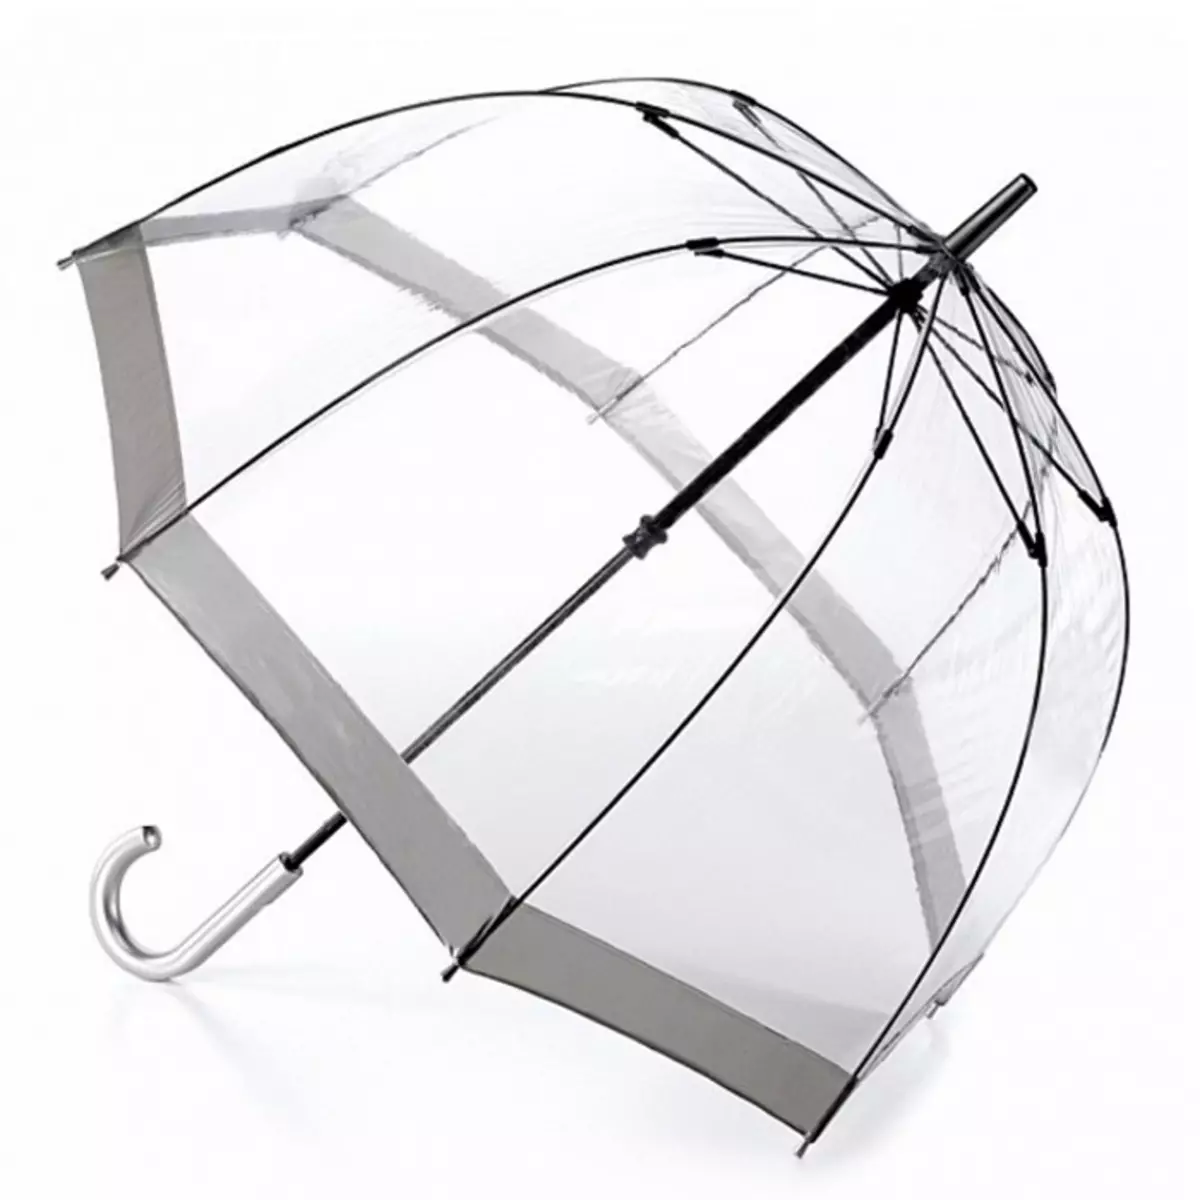 Fulton Umbrellas (53 fotos): skaaimerken fan modellen en resinsjes oer Umbrellas 15229_16